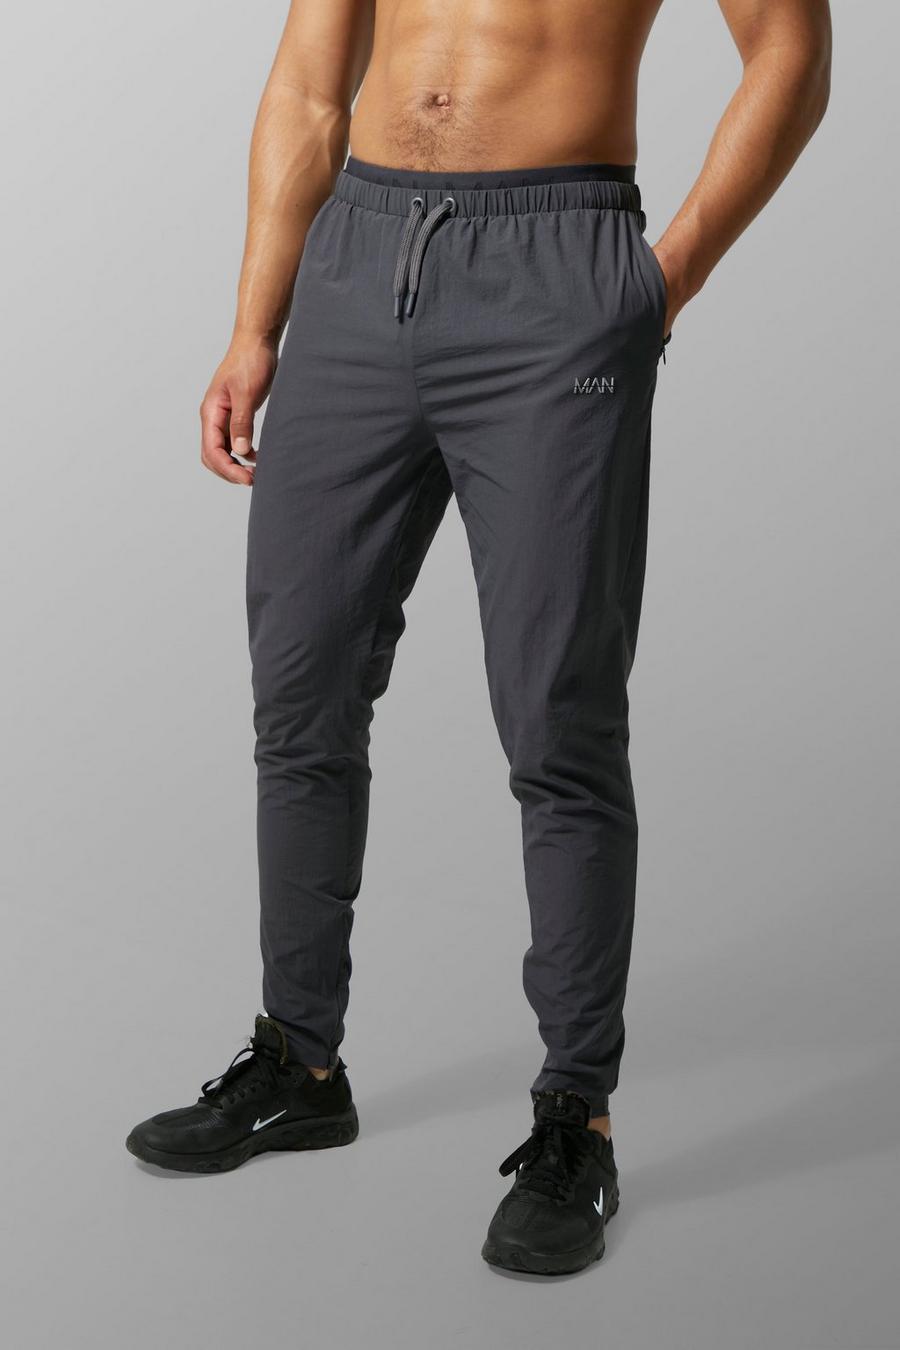 Pantaloni tuta Tall Man Active con fascia in vita, Charcoal grigio